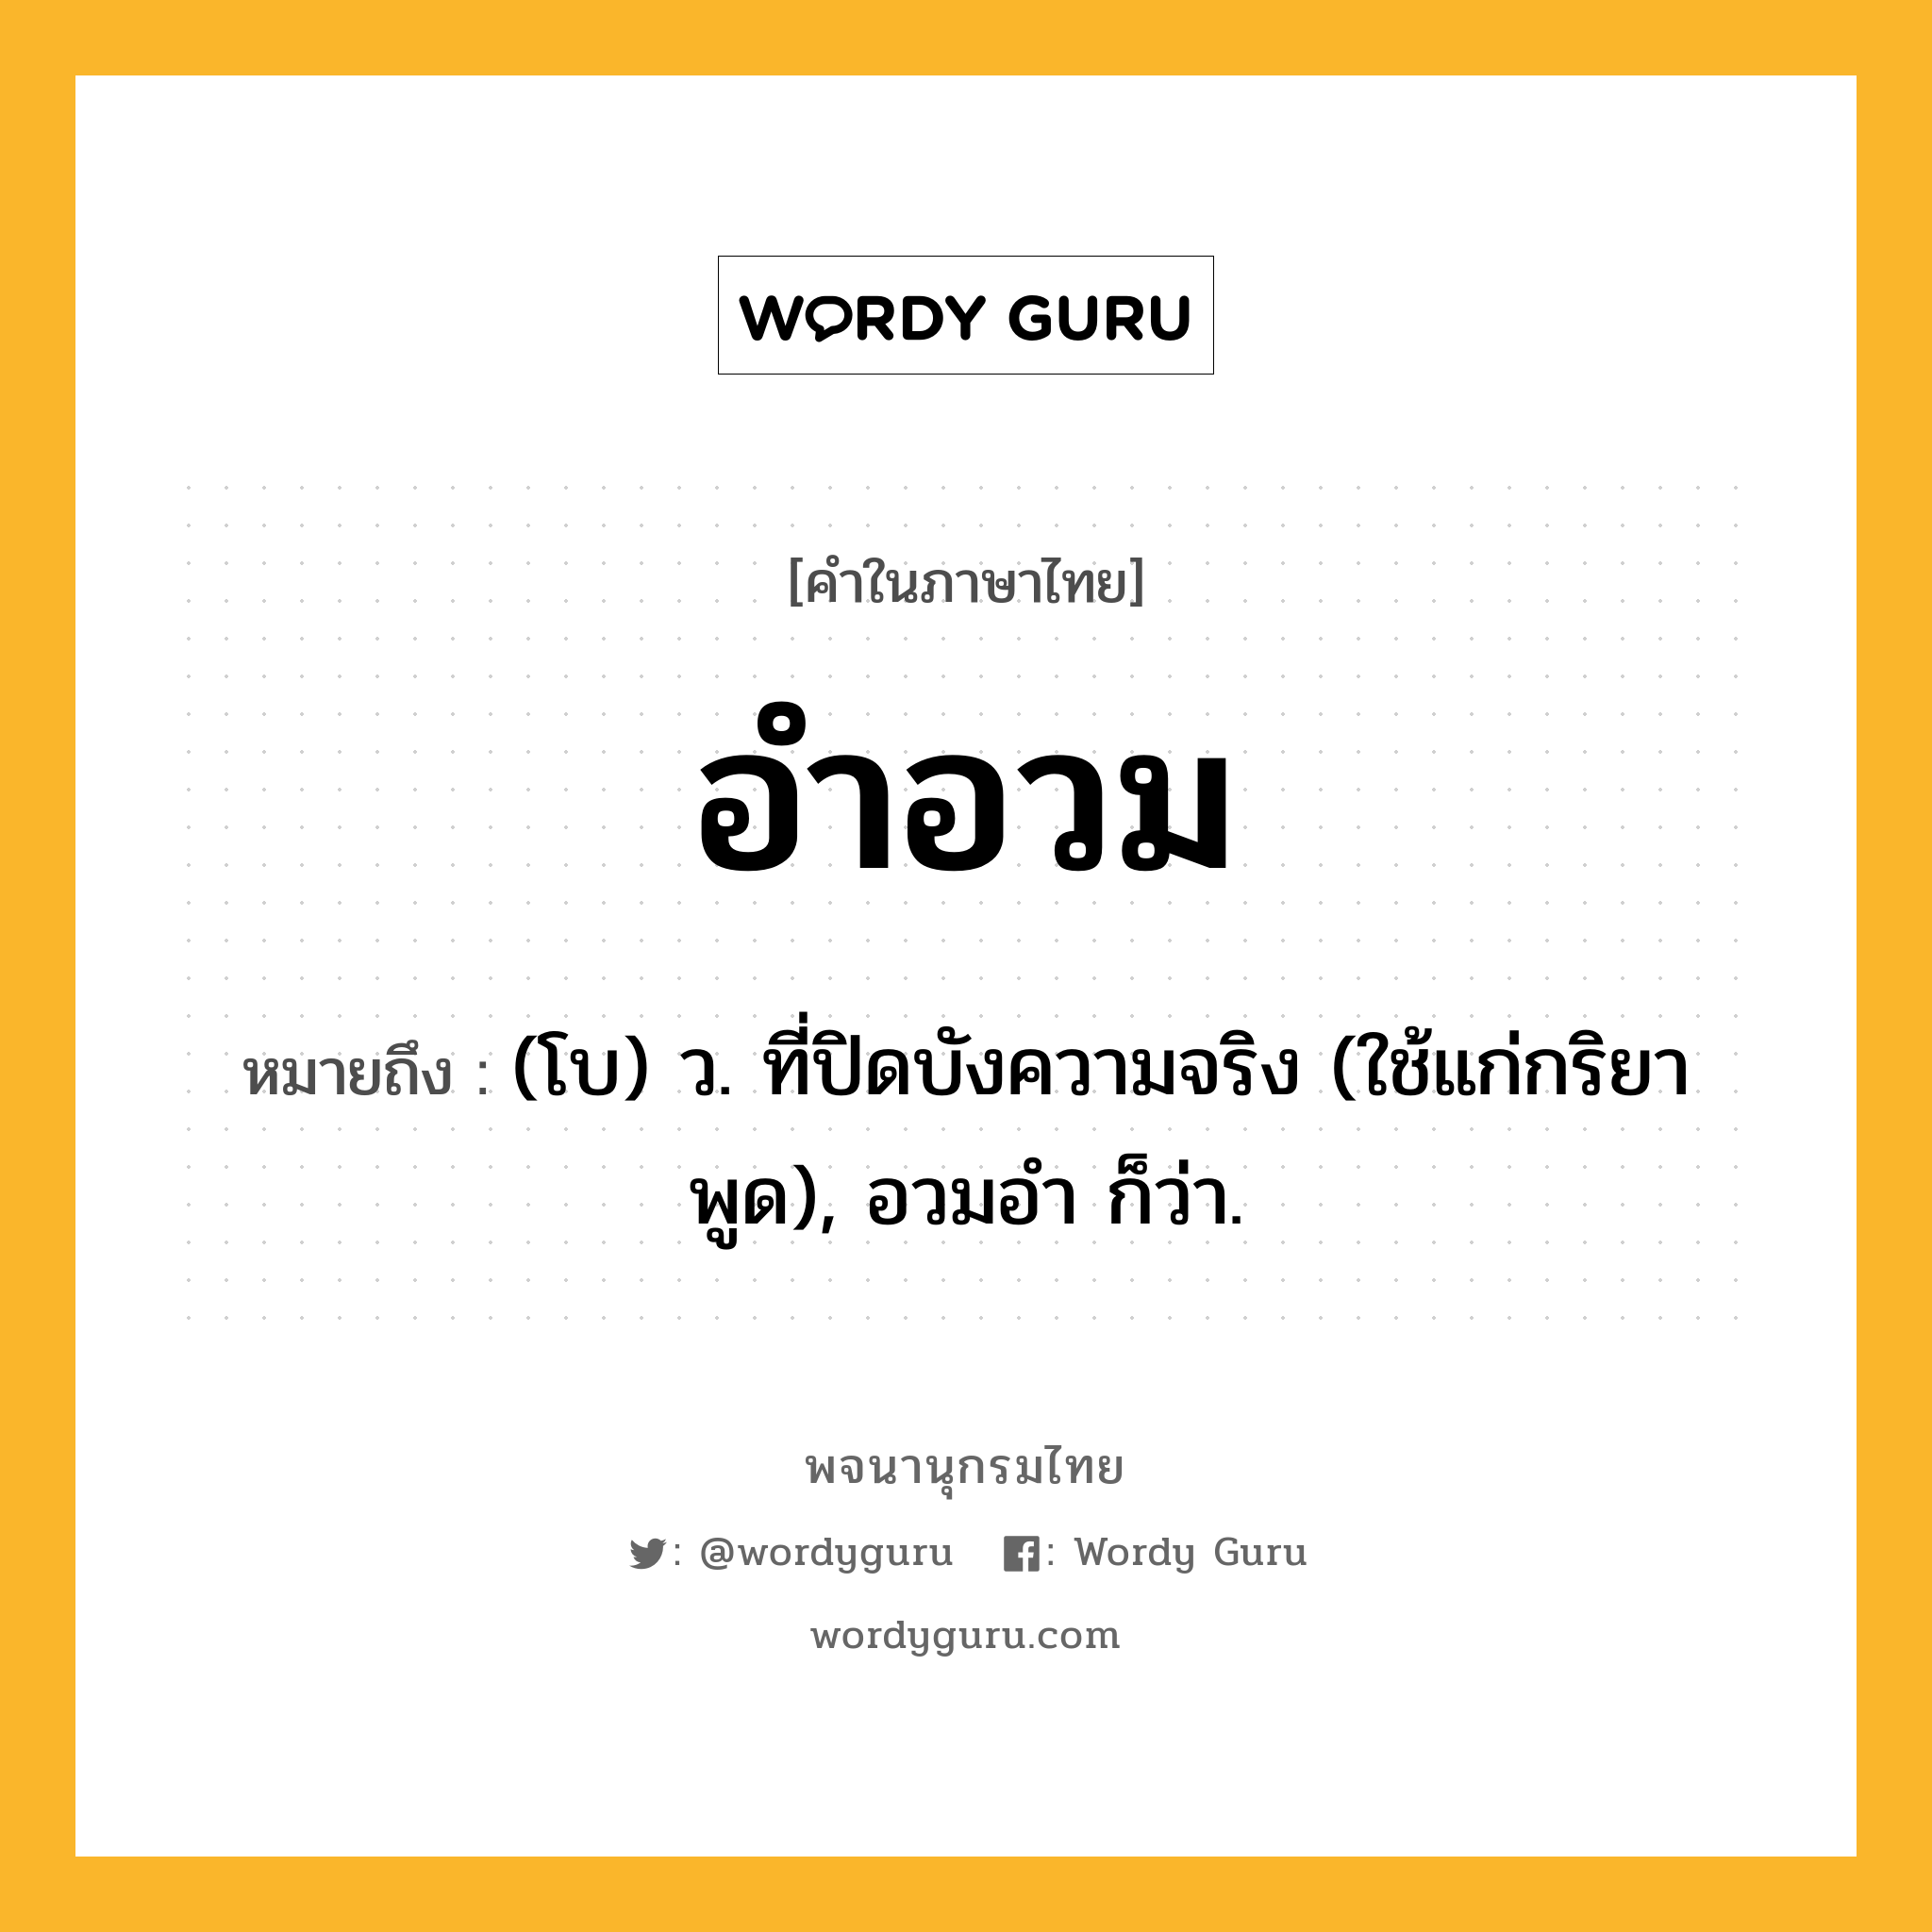 อำอวม หมายถึงอะไร?, คำในภาษาไทย อำอวม หมายถึง (โบ) ว. ที่ปิดบังความจริง (ใช้แก่กริยาพูด), อวมอำ ก็ว่า.